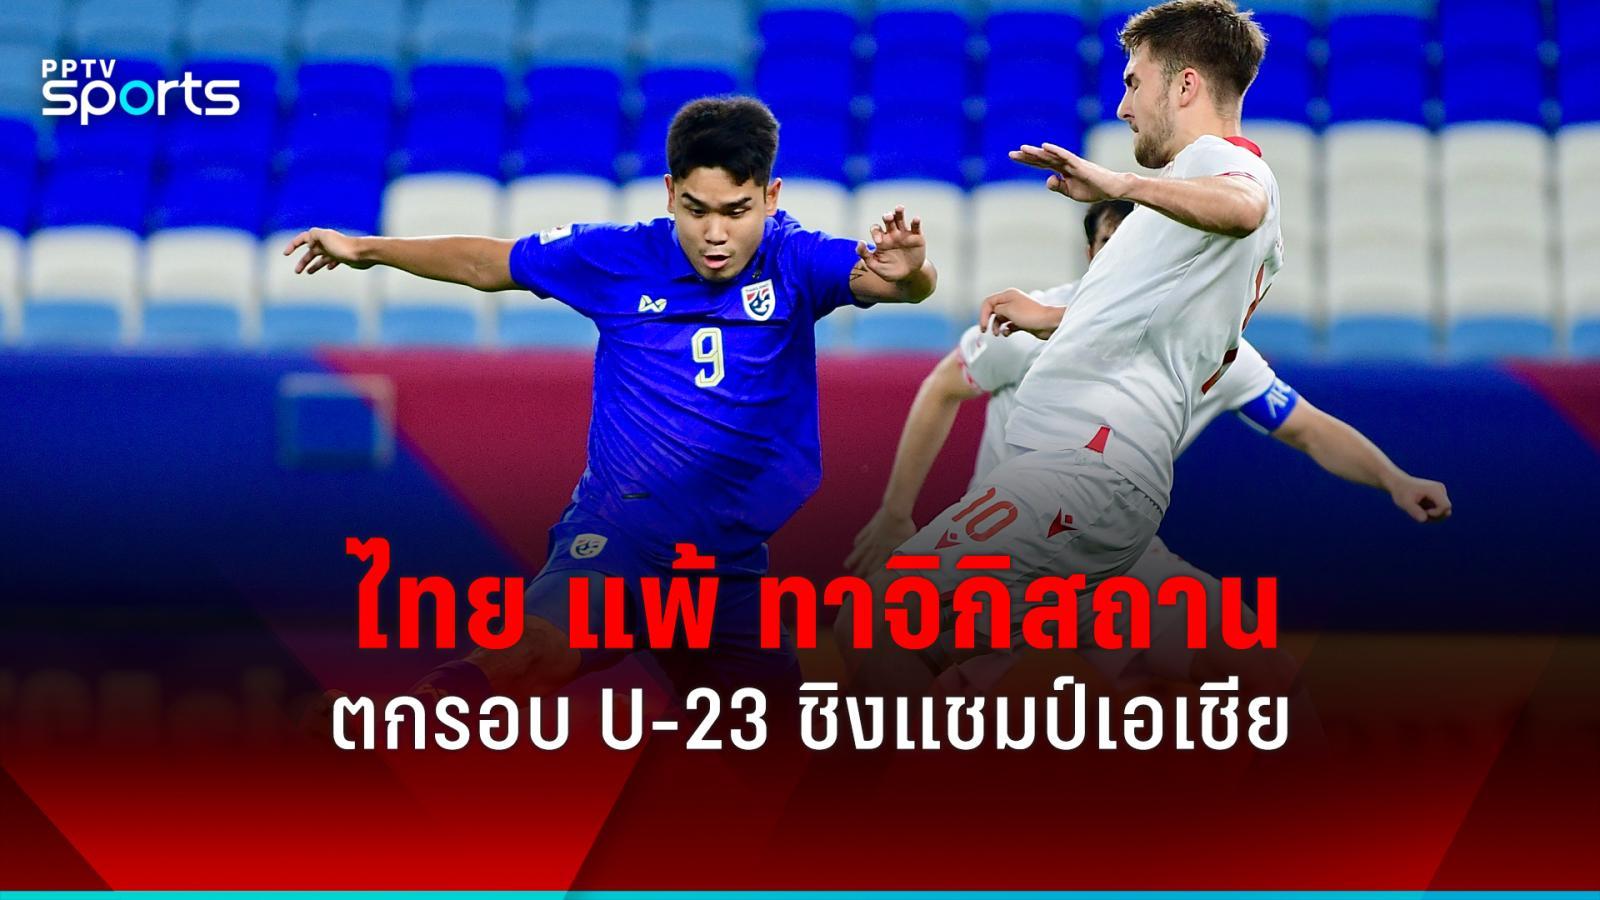 ผลบอลไทย u23 แพ้ ทาจิกิสถาน 0-1 ตกรอบชิงแชมป์เอเชีย